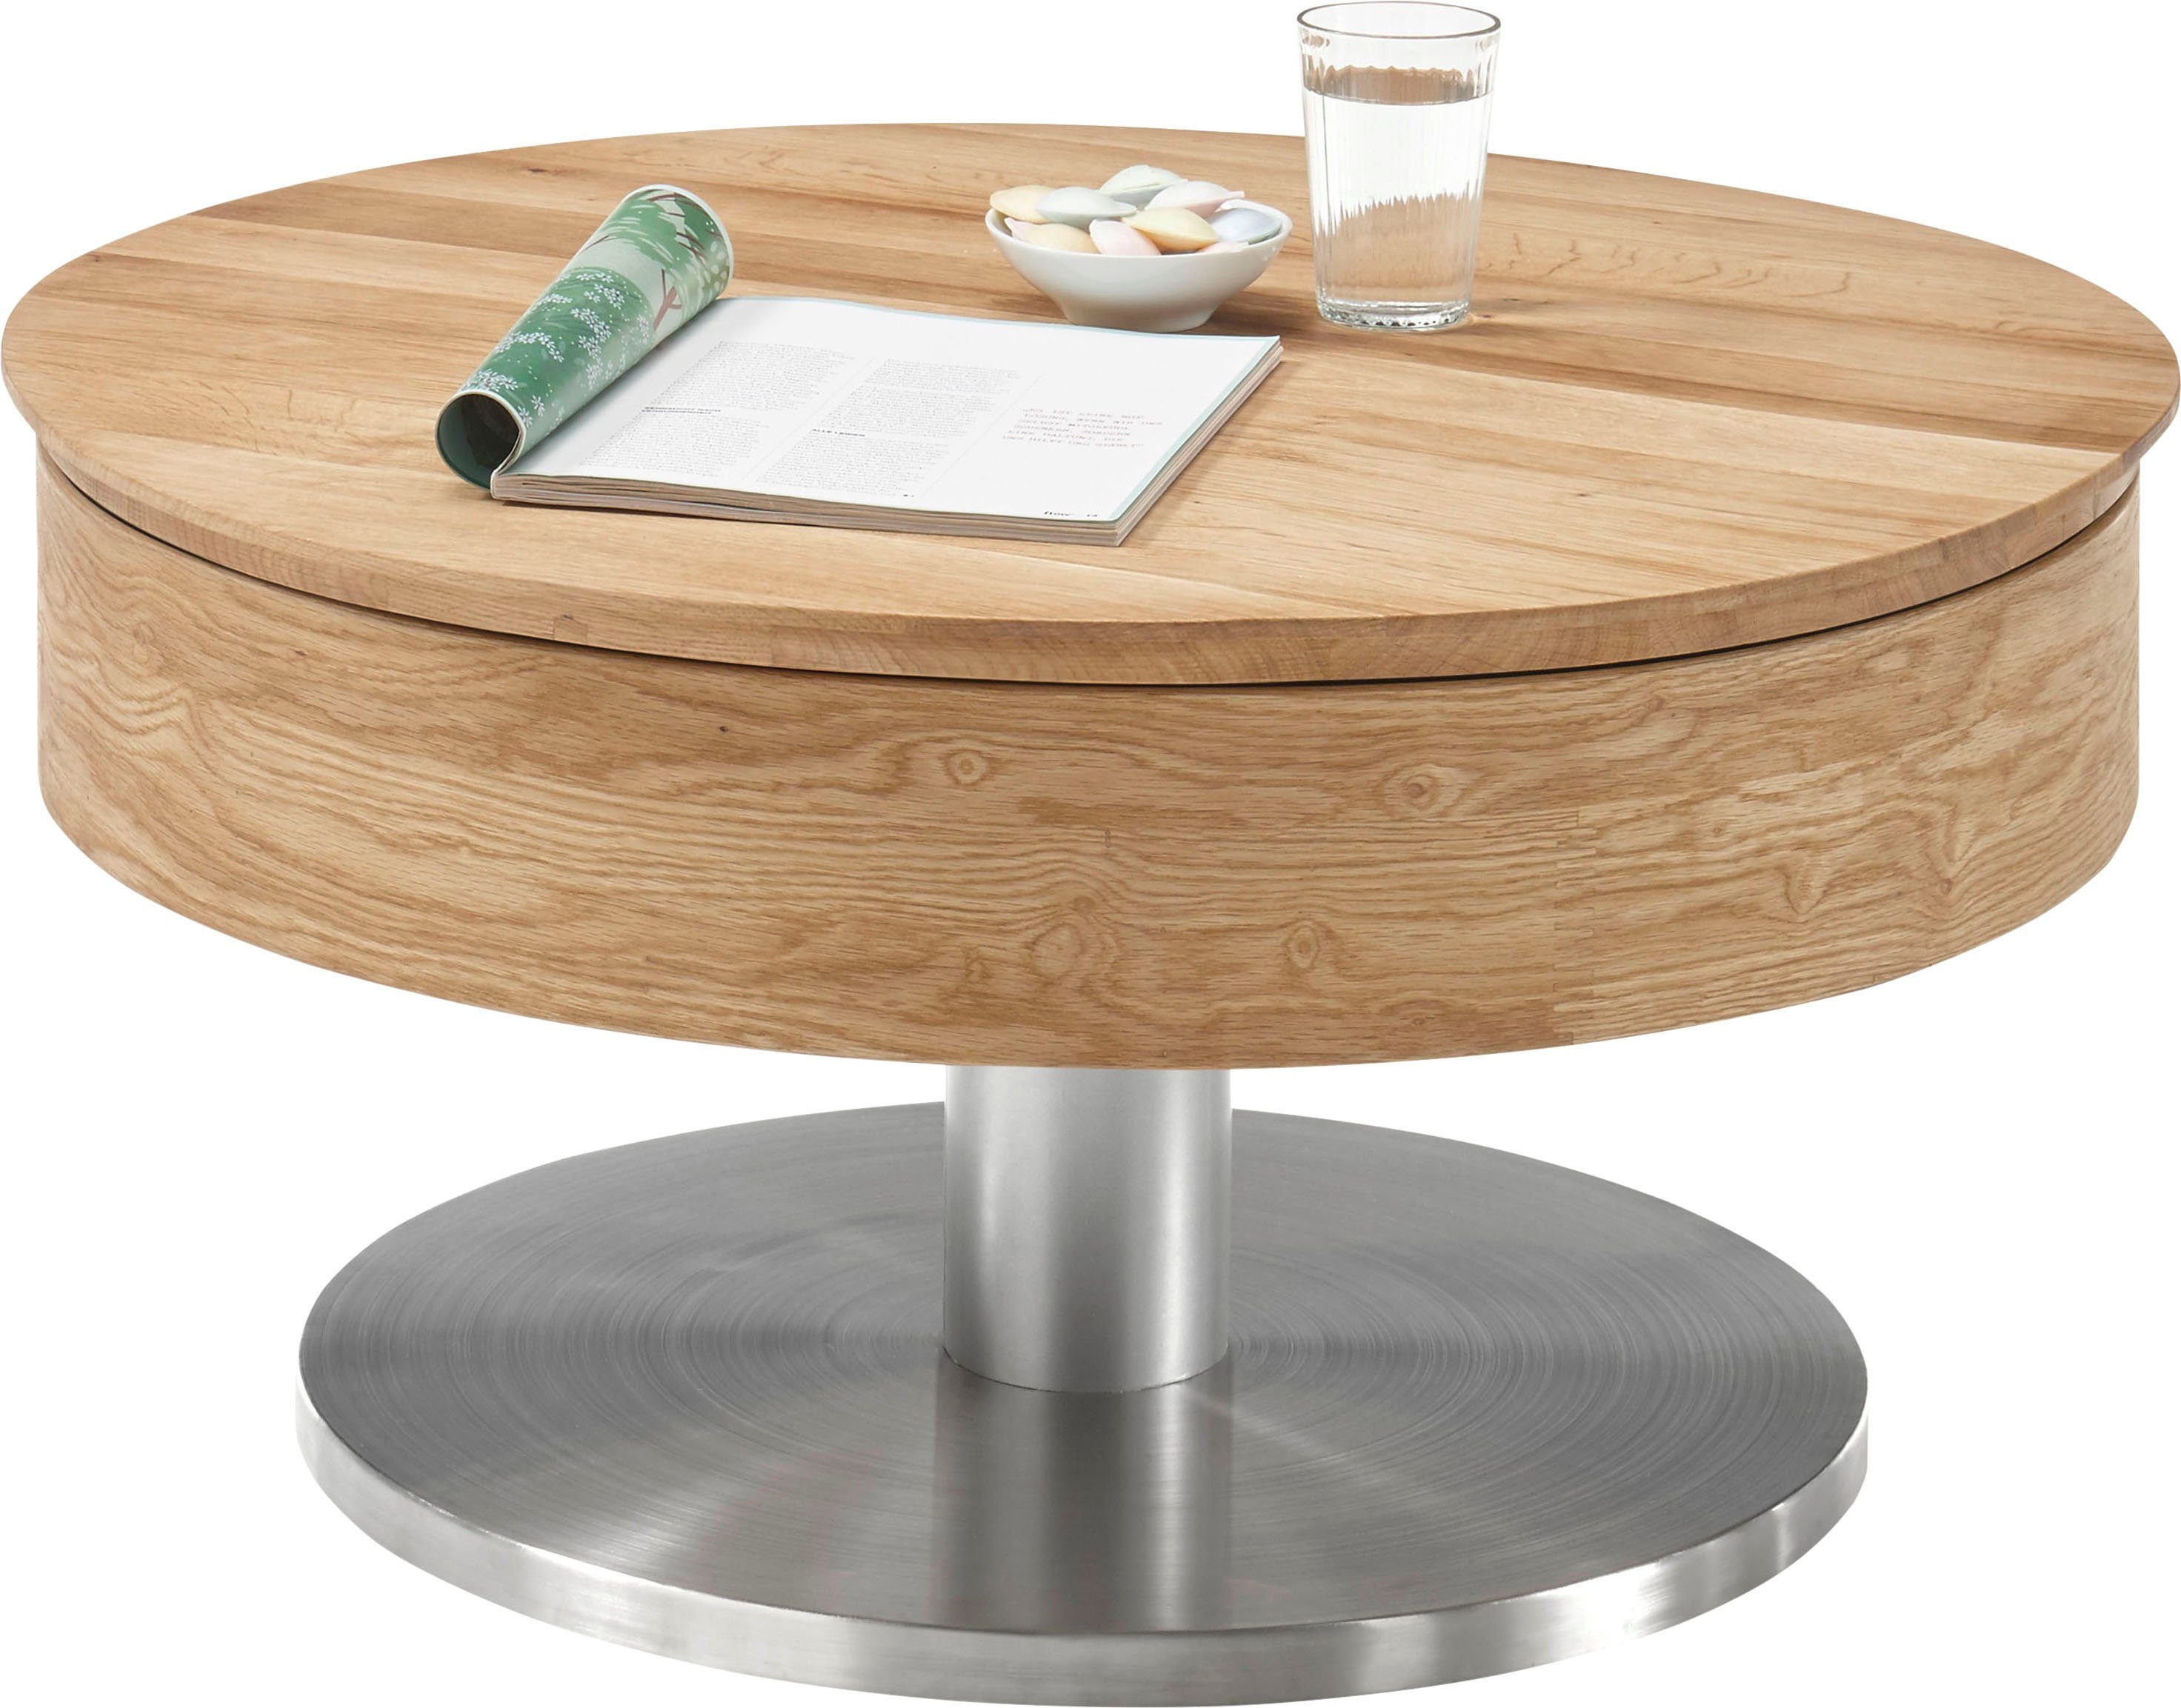 MCA furniture Couchtisch Asteiche | drehbar Suva, furniert Asteiche Tischplatte mit Innenfach